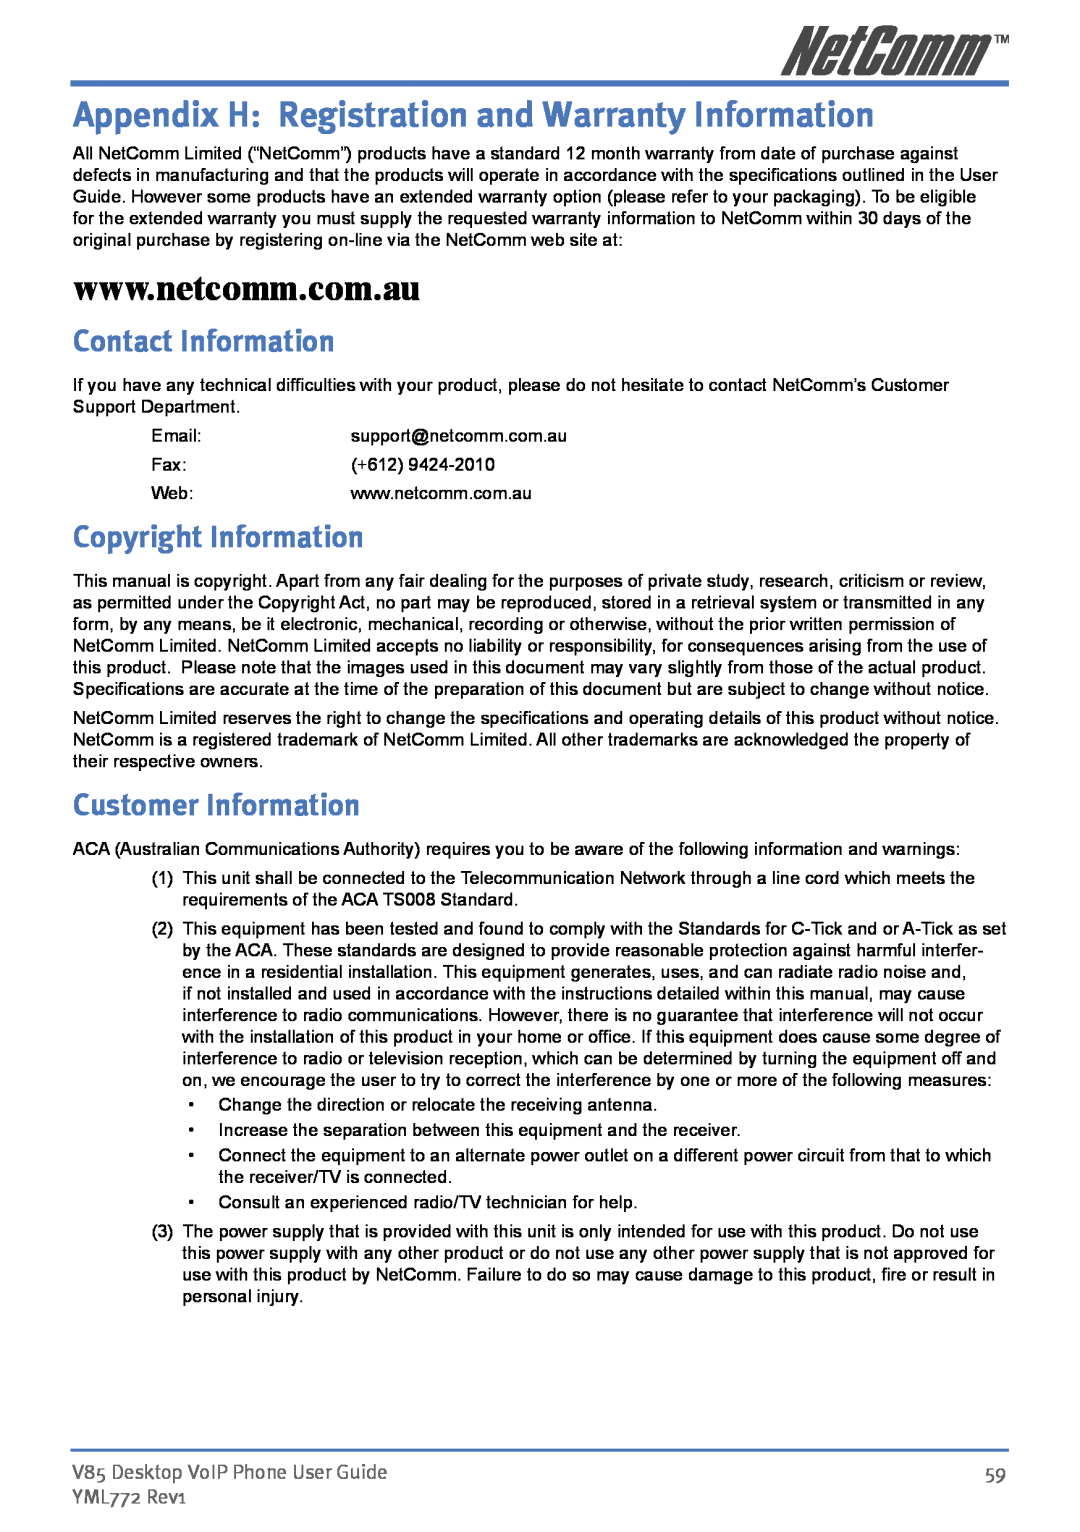 NetComm V85 Appendix H Registration and Warranty Information, Contact Information, Copyright Information, YML772 Rev1 